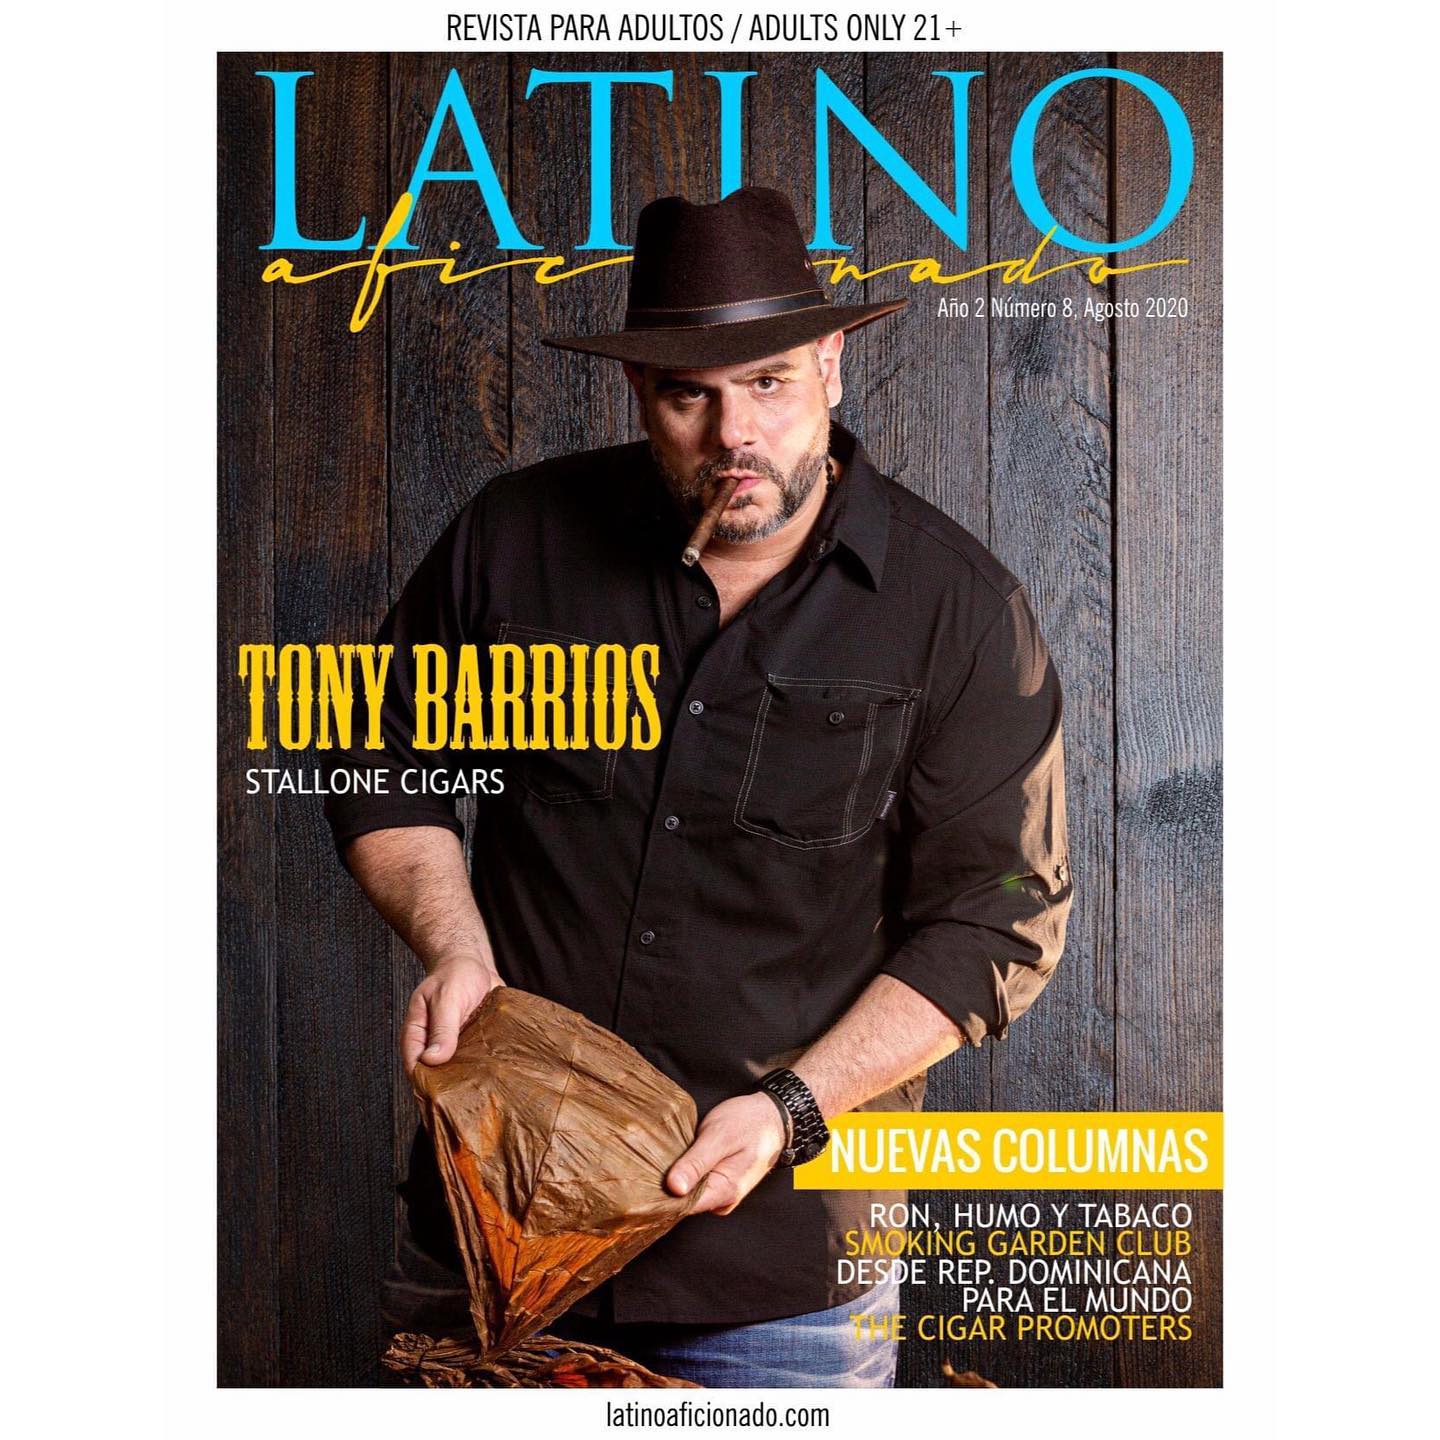 Acabou de sair a nova edição da revista “Latino Aficionado”, e desta vez, traz na capa Tony Barrios, da Stallone Cigars